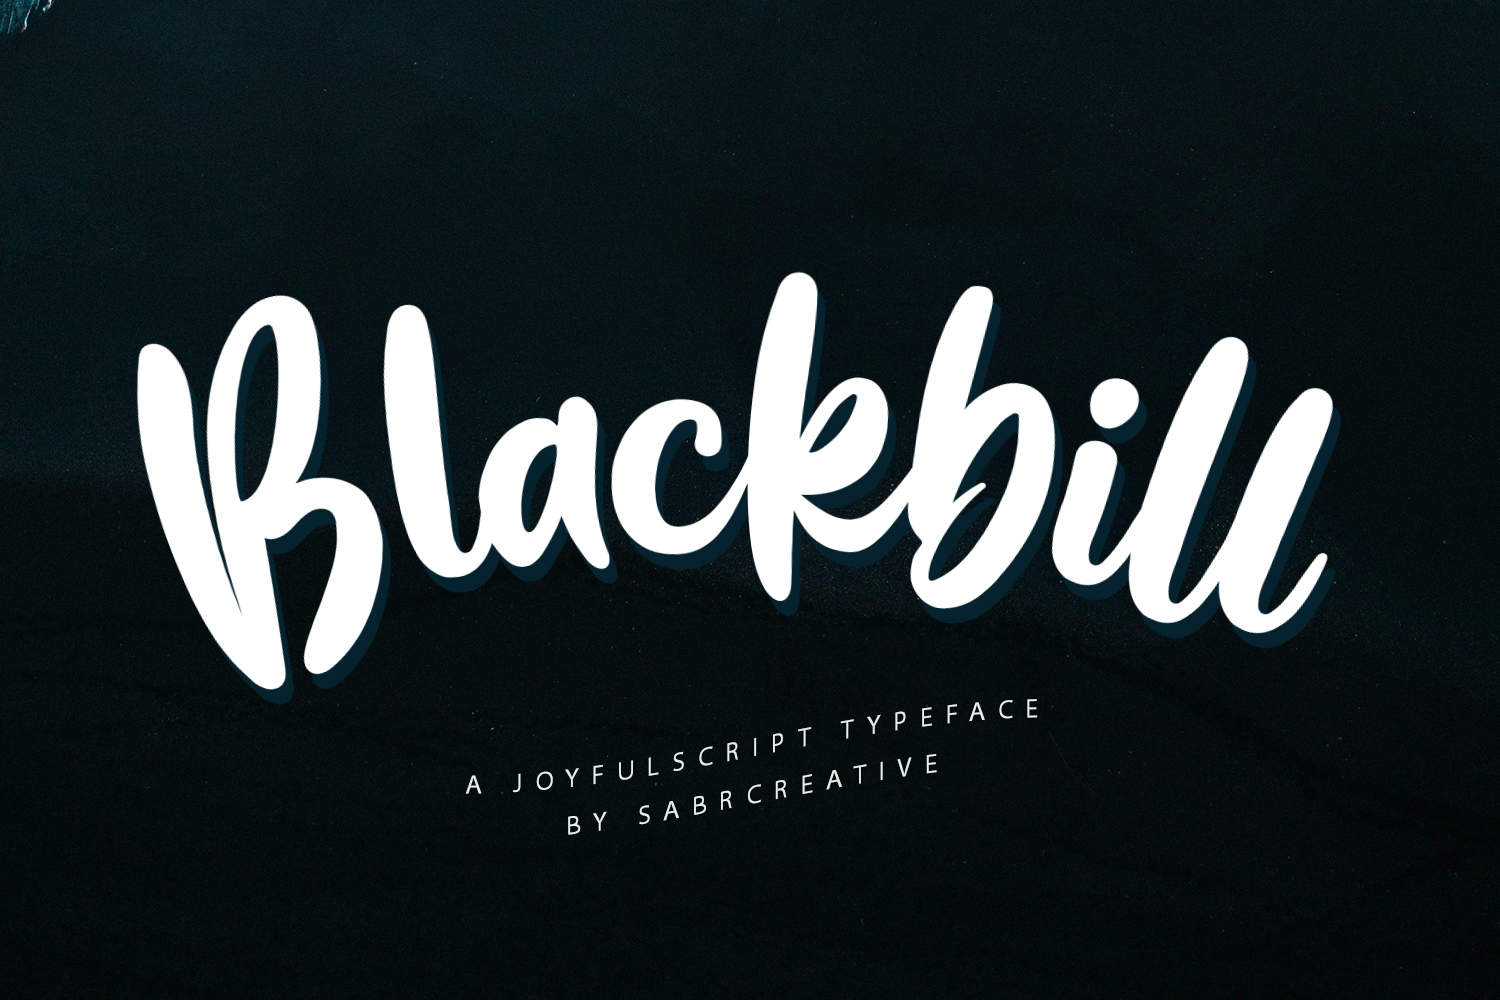 Blackbill Free Font